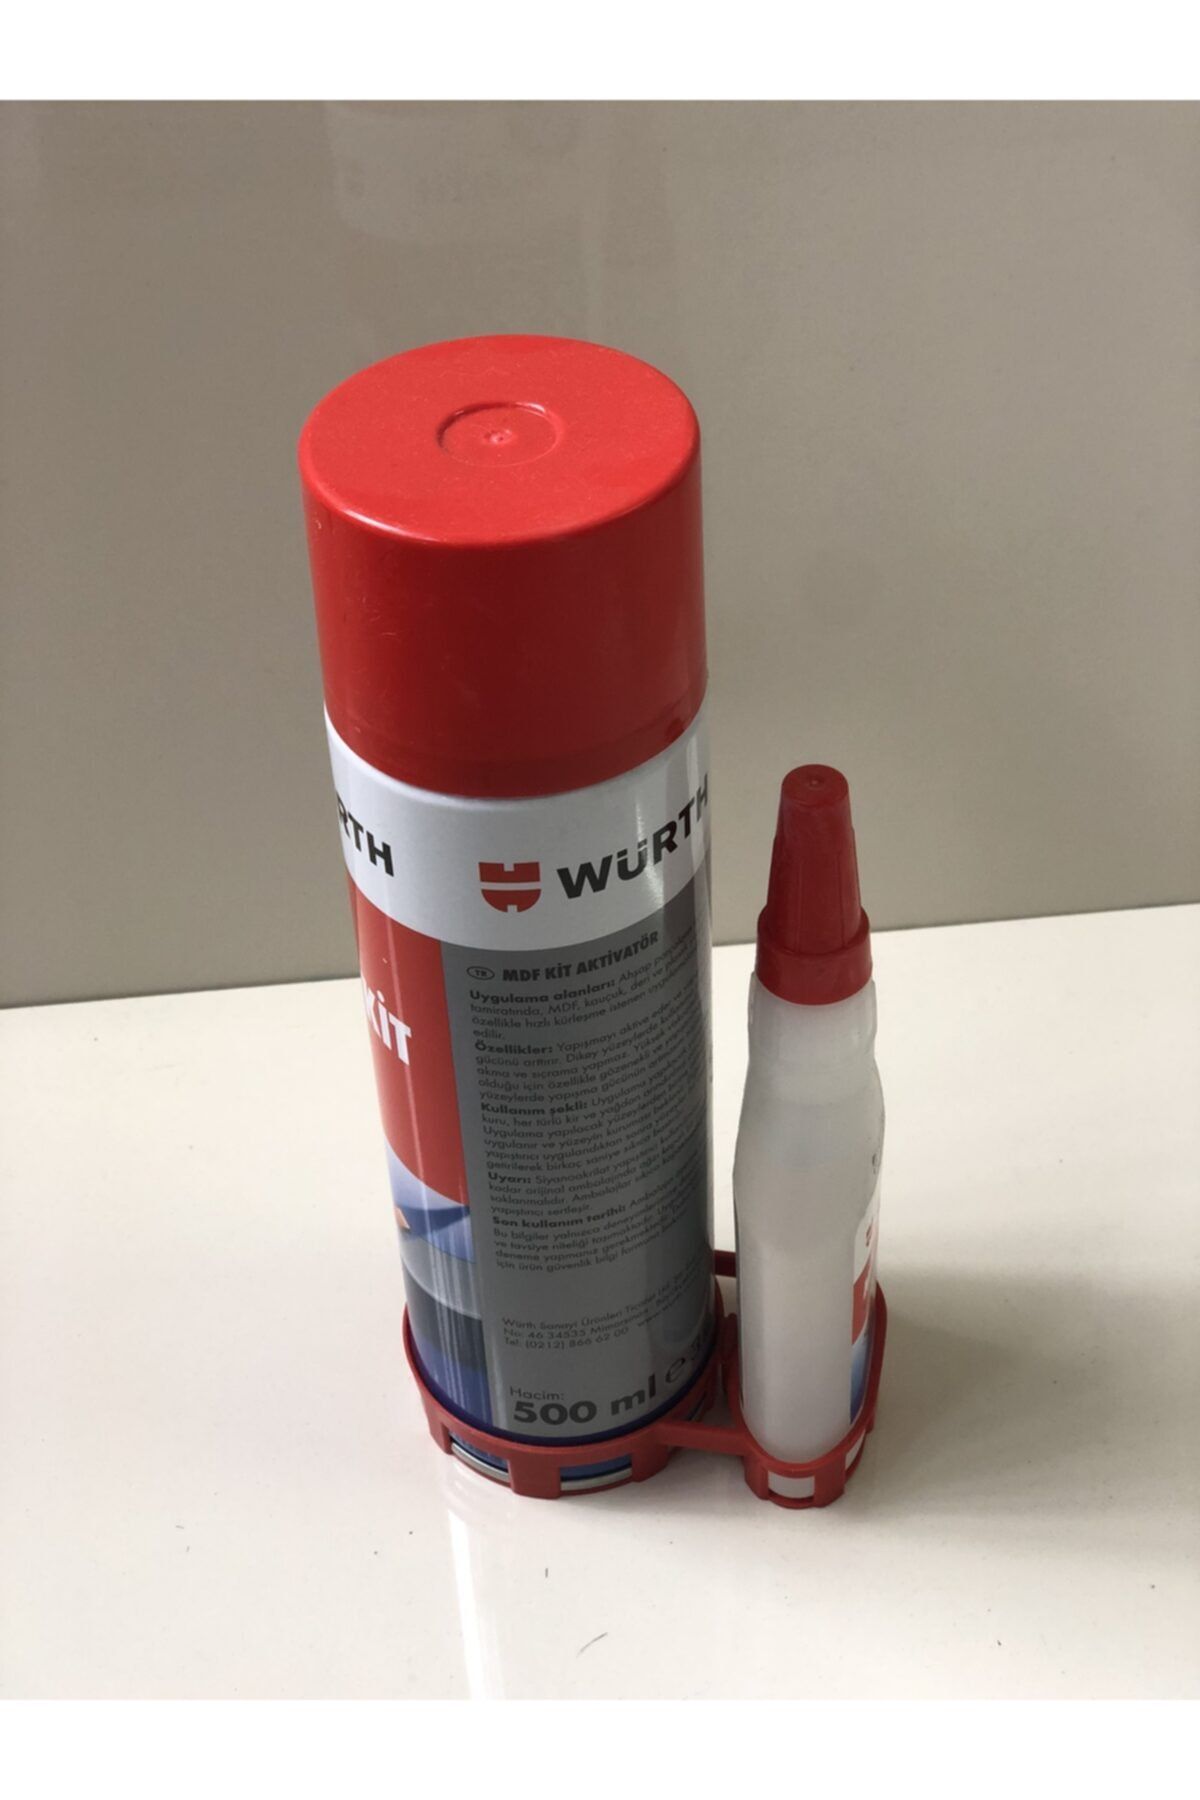 Würth Mdf Kit Aktivatör Hızlı Yapıştırıcı